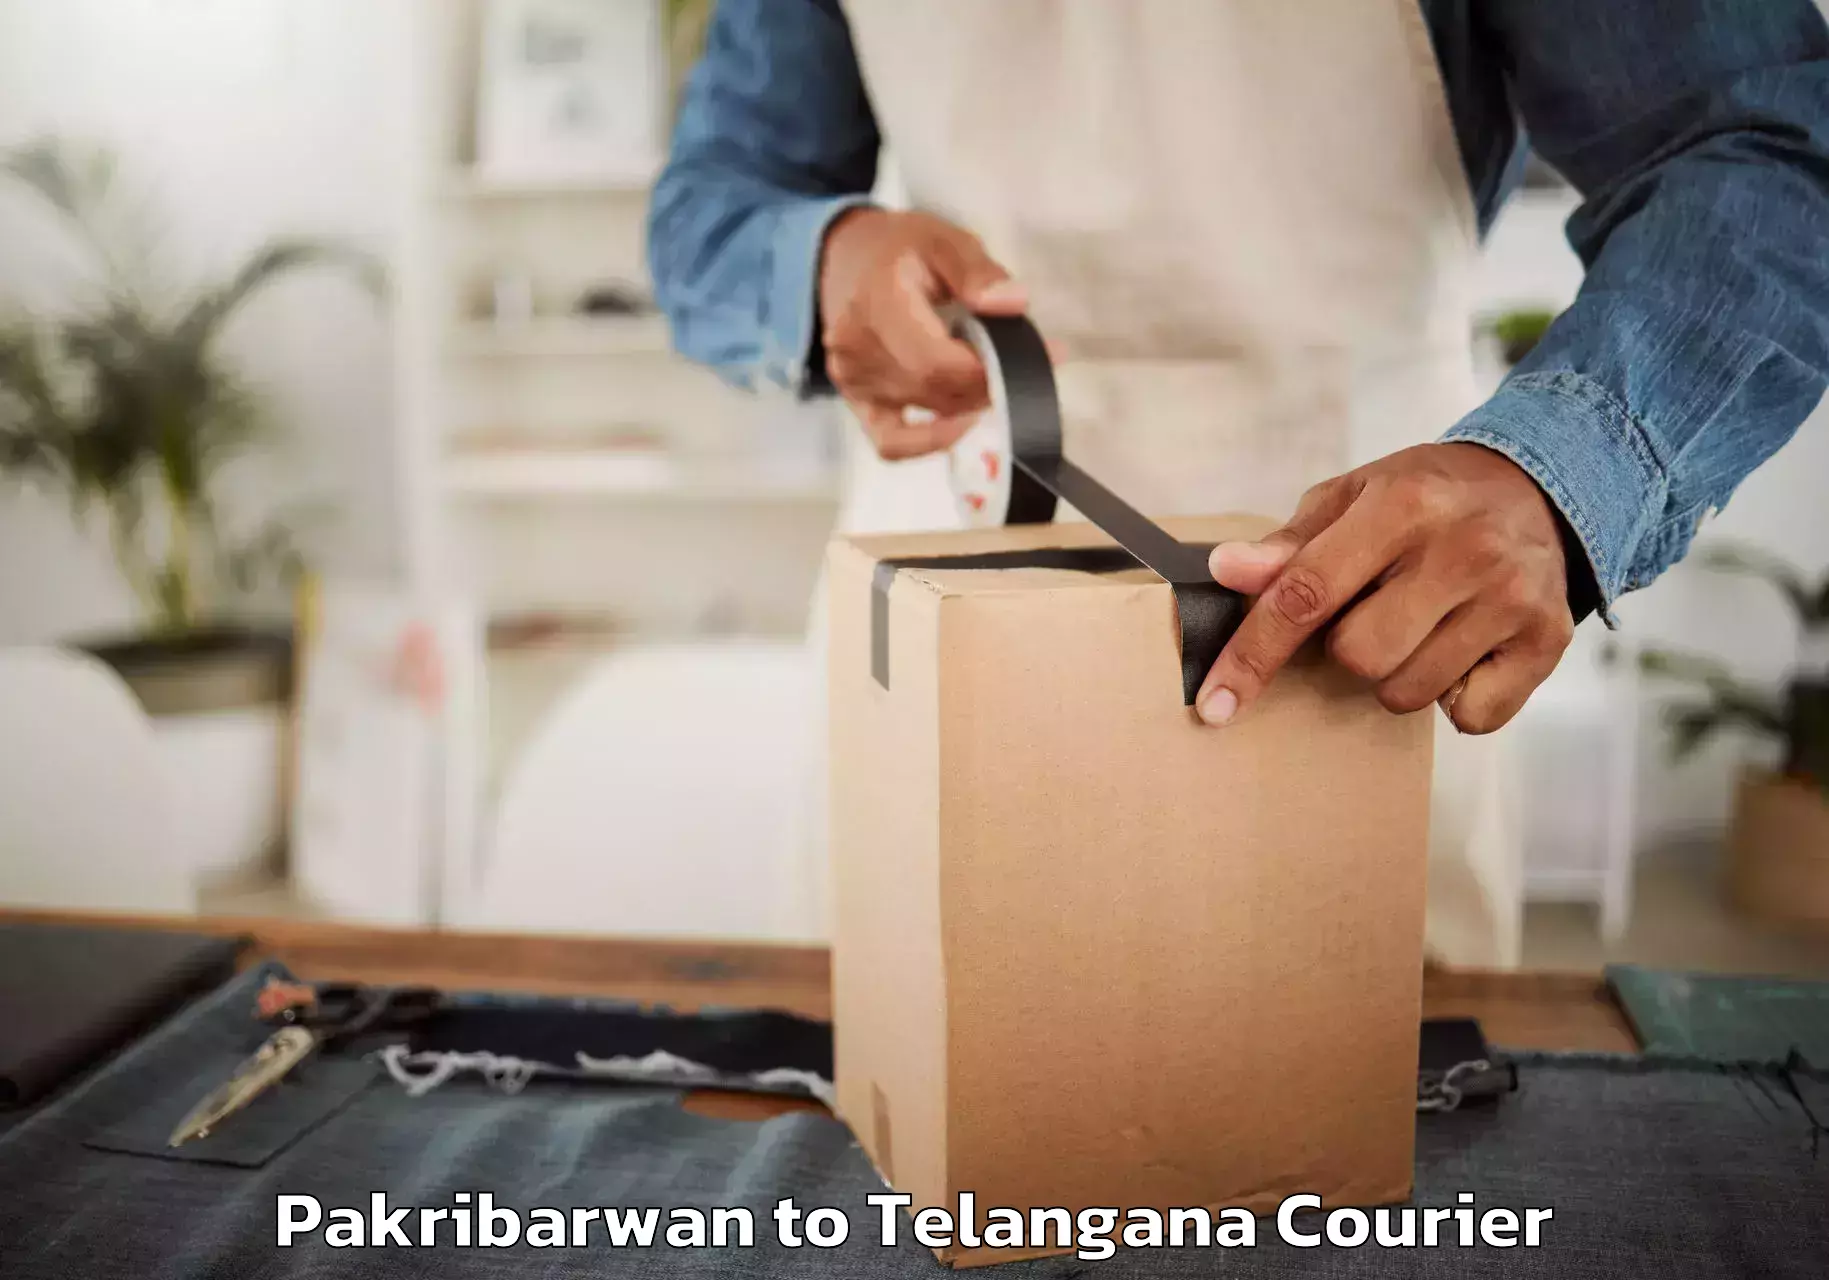 Stress-free moving Pakribarwan to Telangana